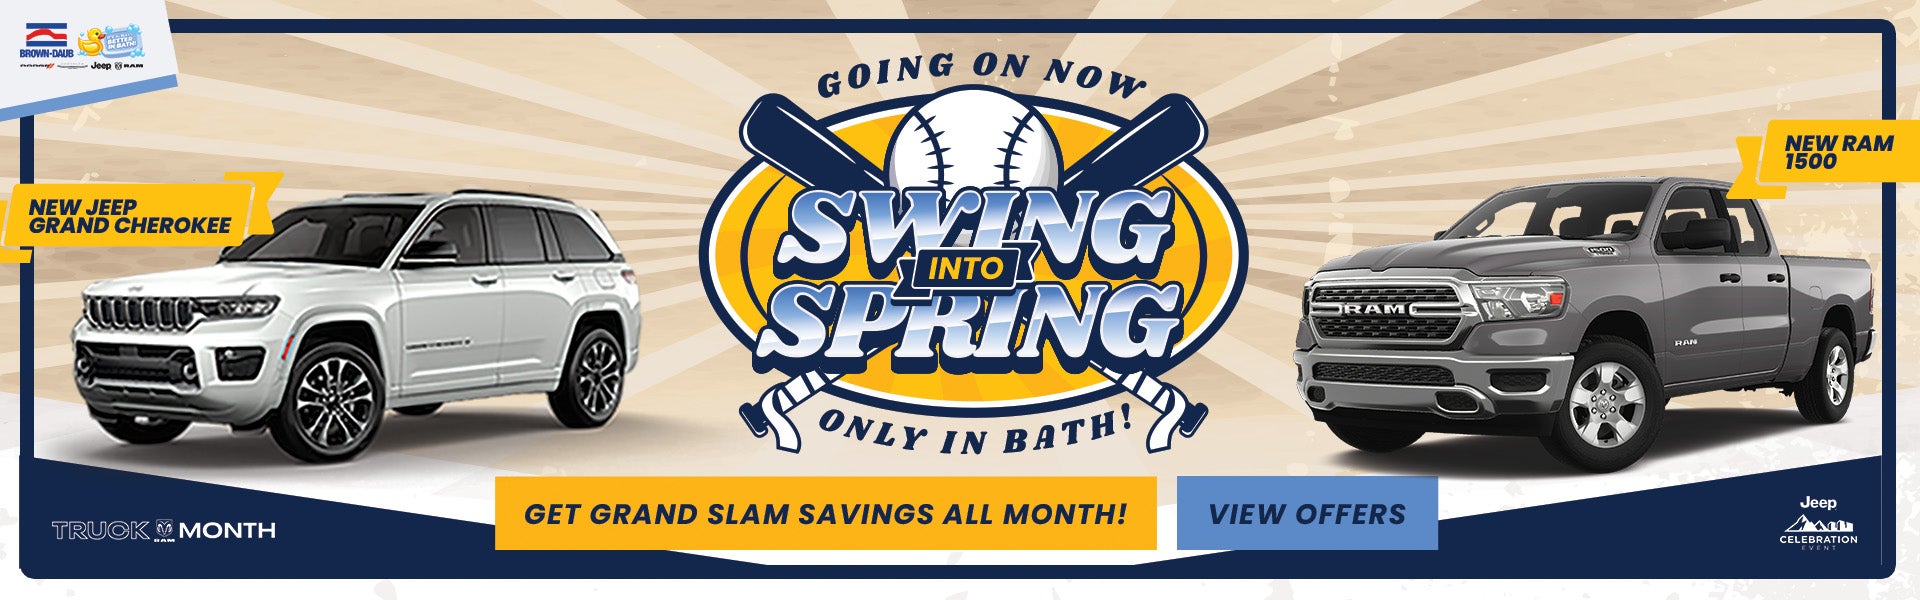 Swing Into Spring Savings